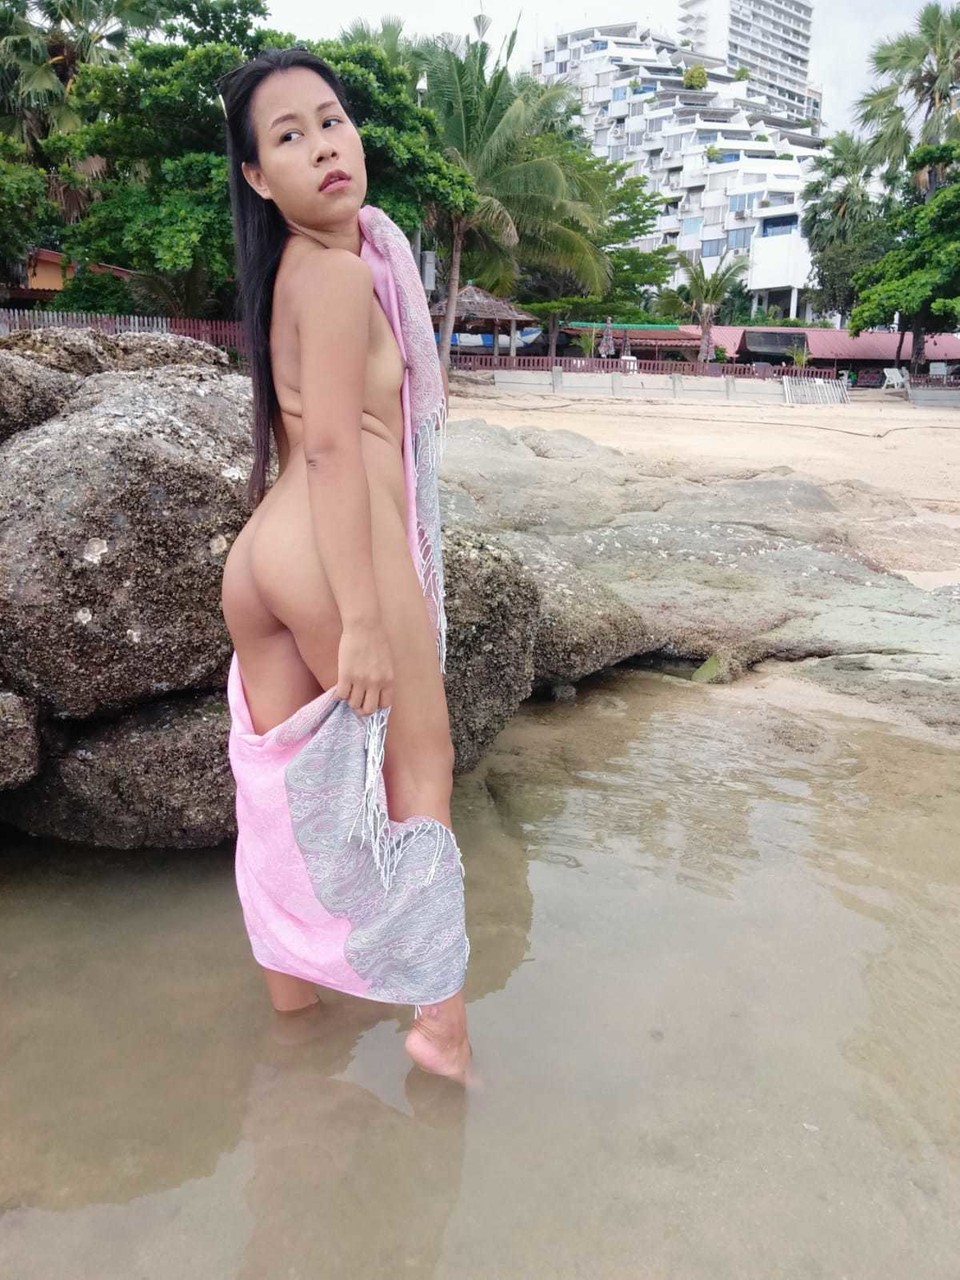 Gorgeous Asian amateur Kiki Asia shows her hot ass in a bikini at the beach porno foto #425545196 | TukTuk Thailand Pics, Kiki Asia, Thai, mobiele porno